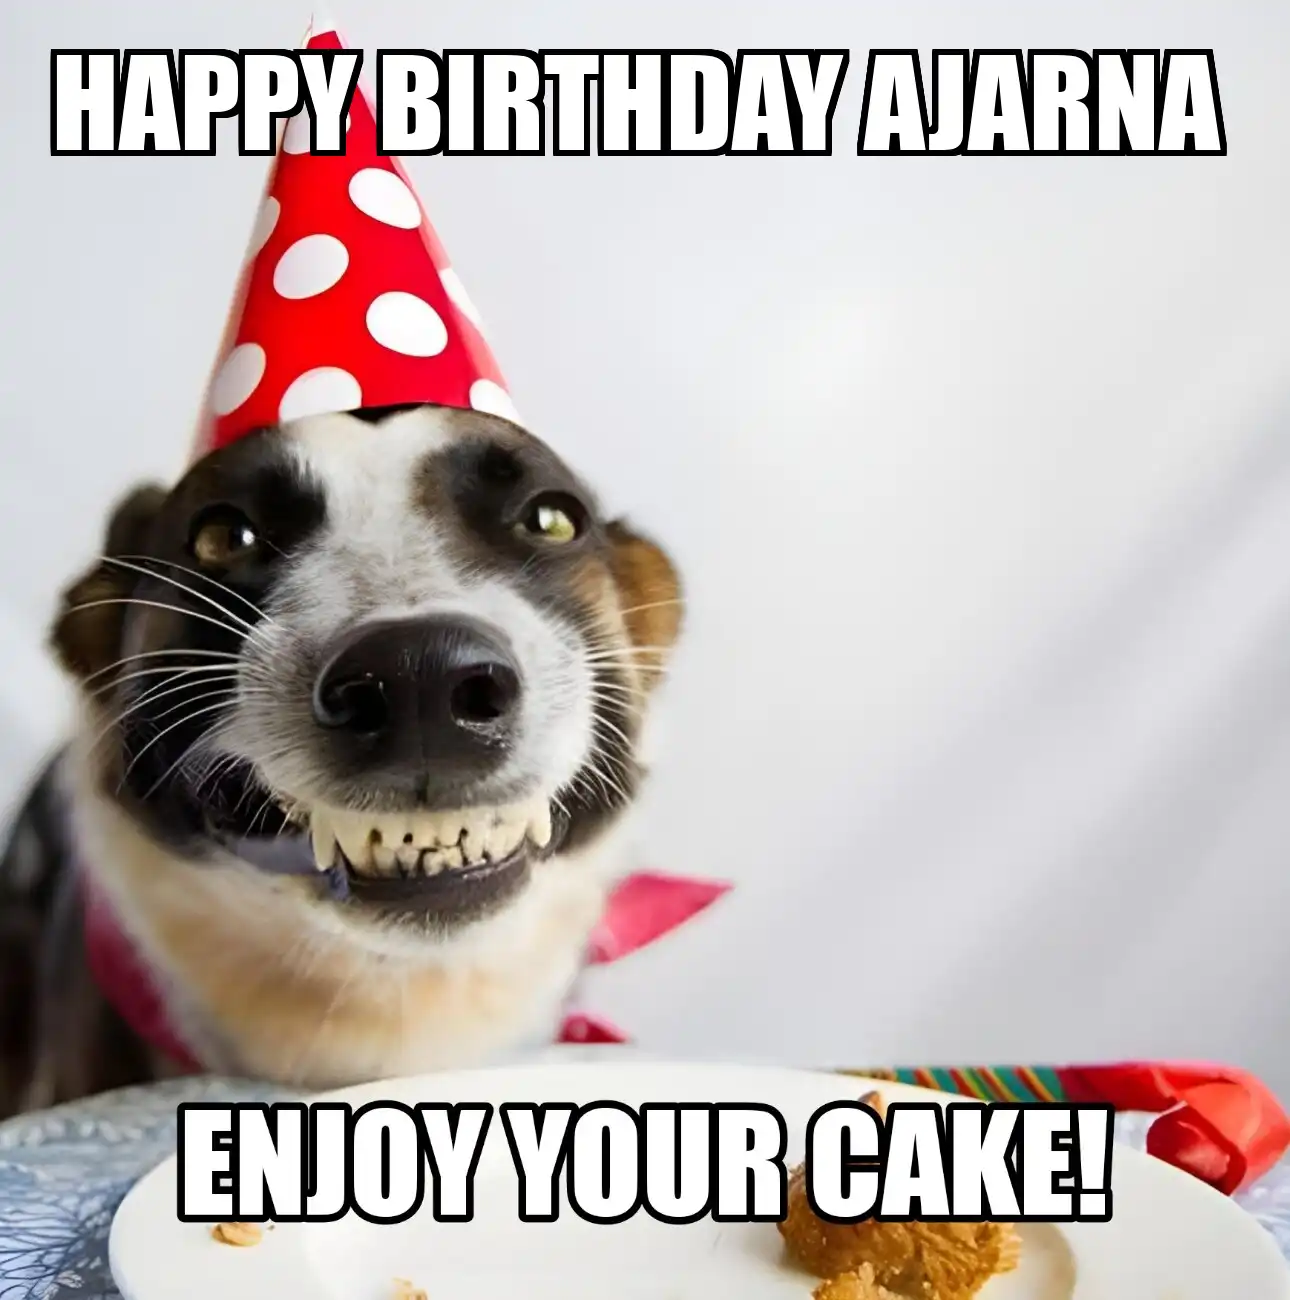 Happy Birthday Ajarna Enjoy Your Cake Dog Meme